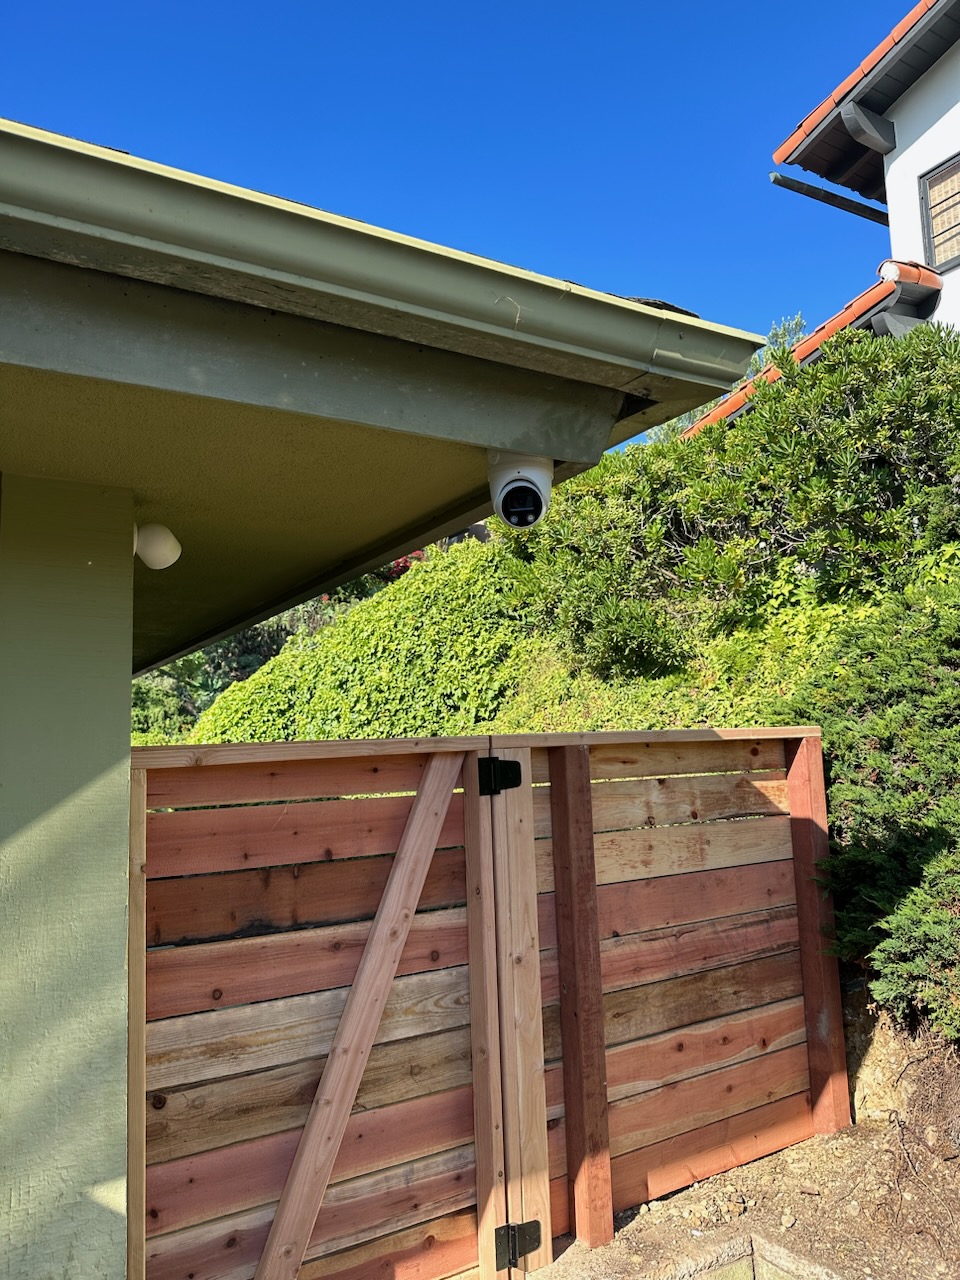 outdoor active surveillance camera